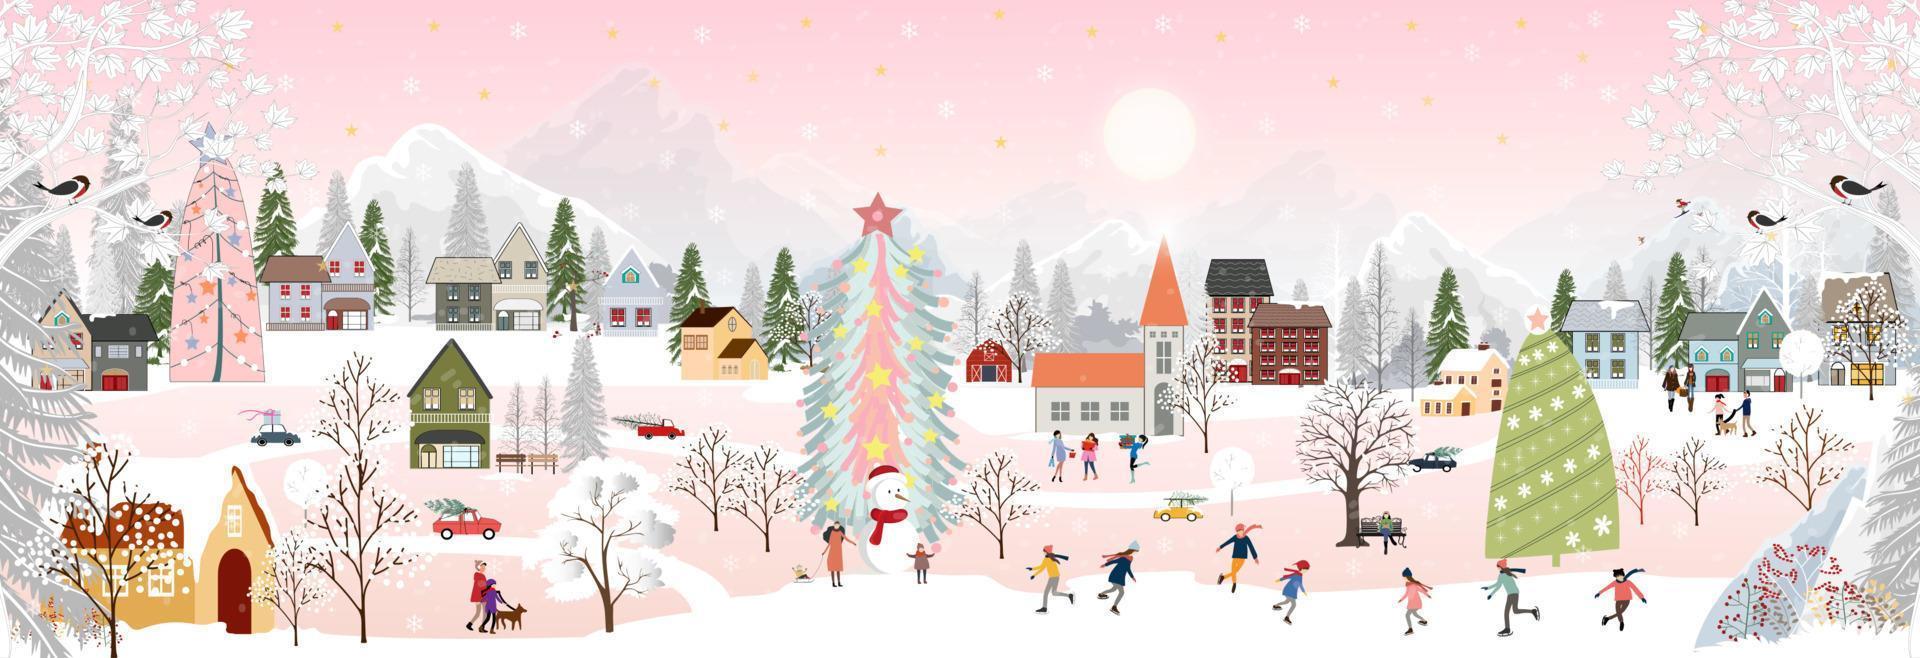 paysage d'hiver la nuit avec des gens s'amusant à faire des activités de plein air le nouvel an, le jour de noël dans le village avec des gens célébrant, des enfants jouant des patins à glace, des adolescents skiant avec de la neige qui tombe vecteur